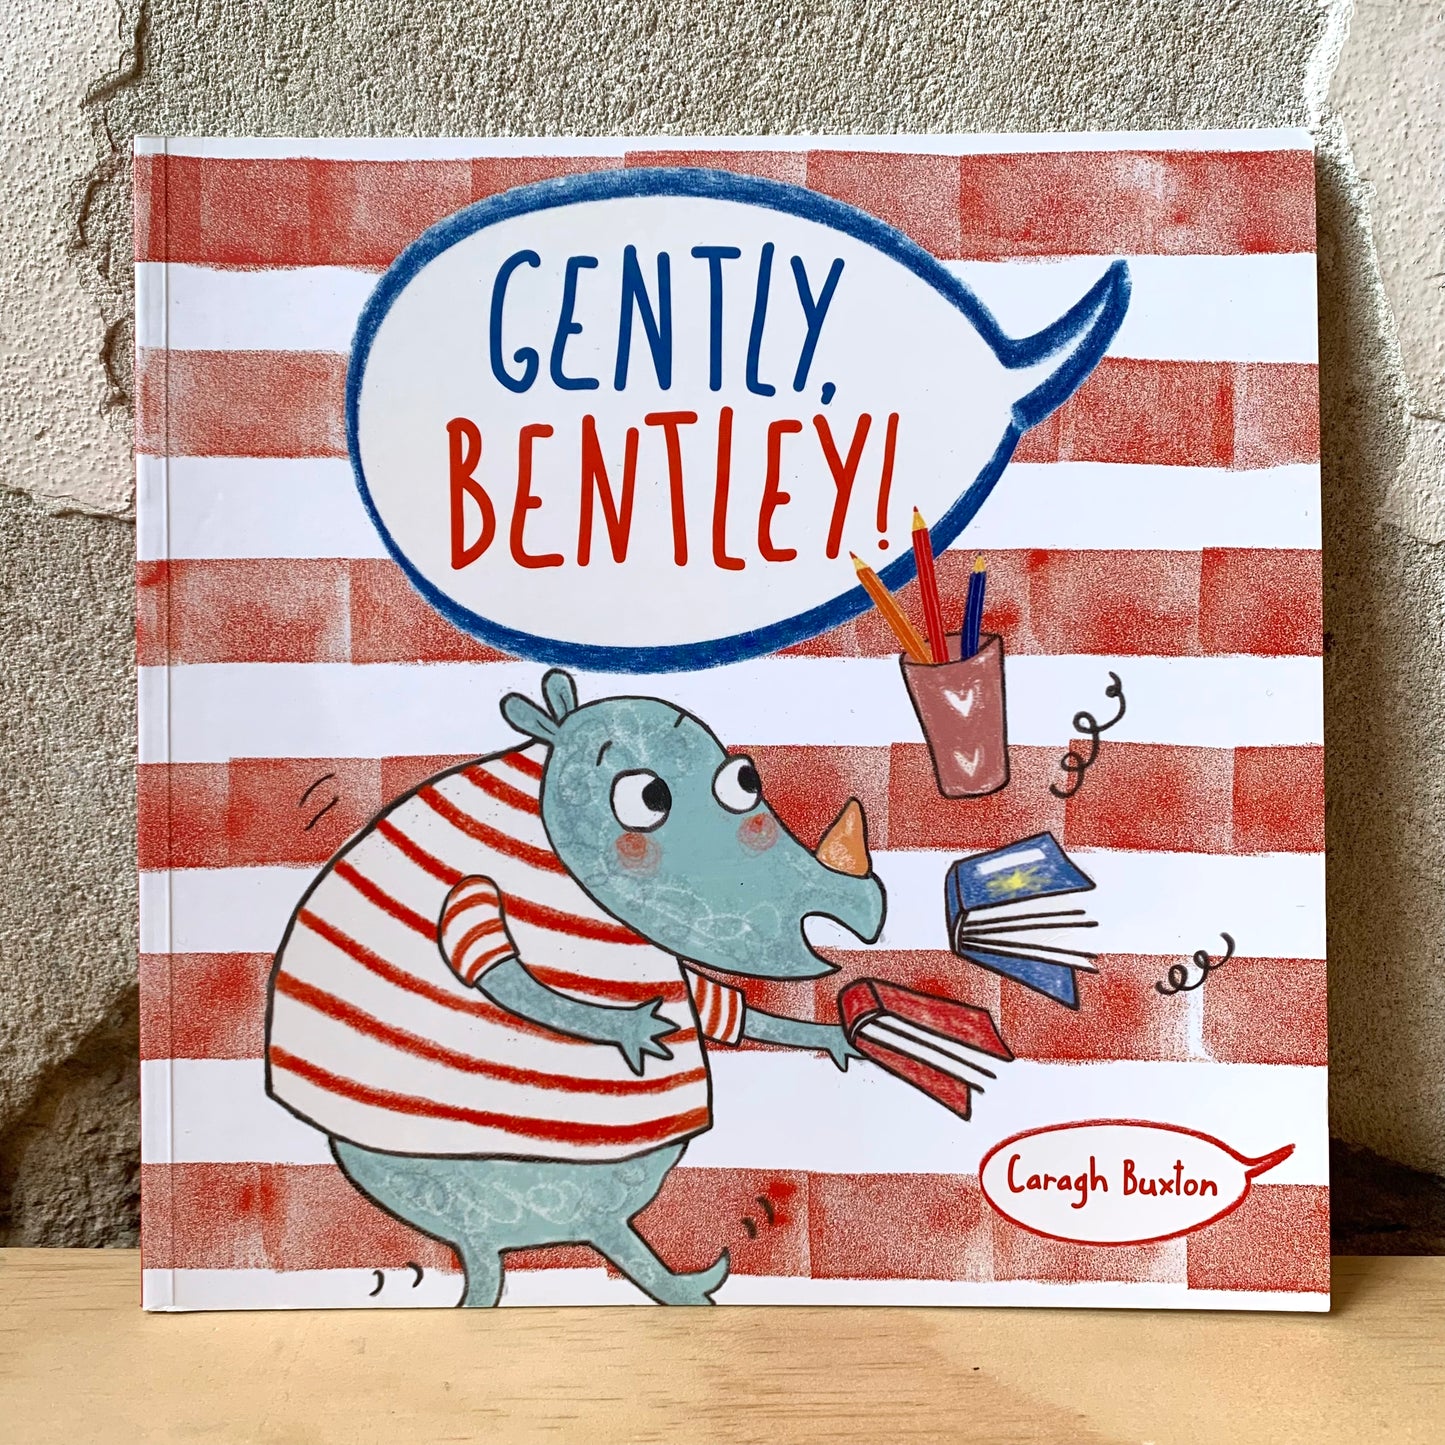 Gently, Bentley! – Caragh Buxton